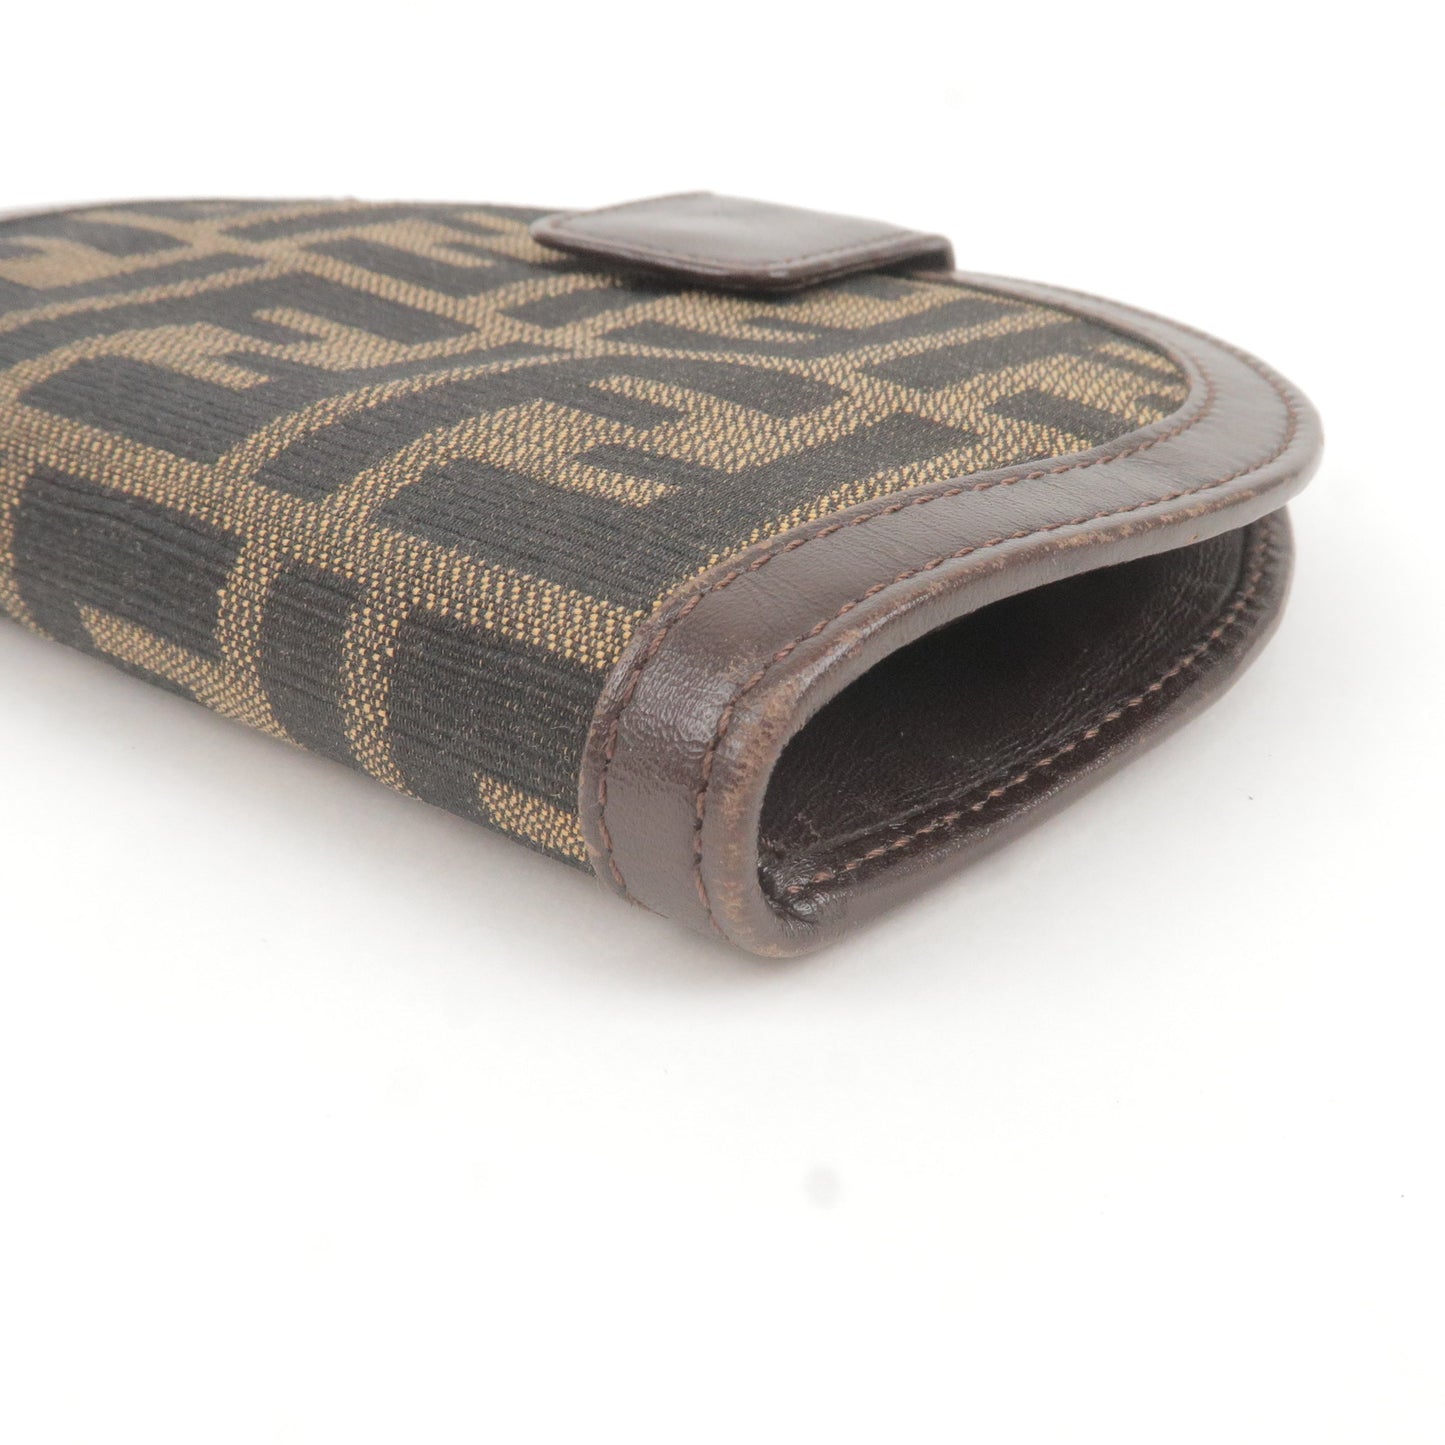 FENDI Zucca Canvas Leather Bi-fold Wallet 01223 Khaki Brown Black